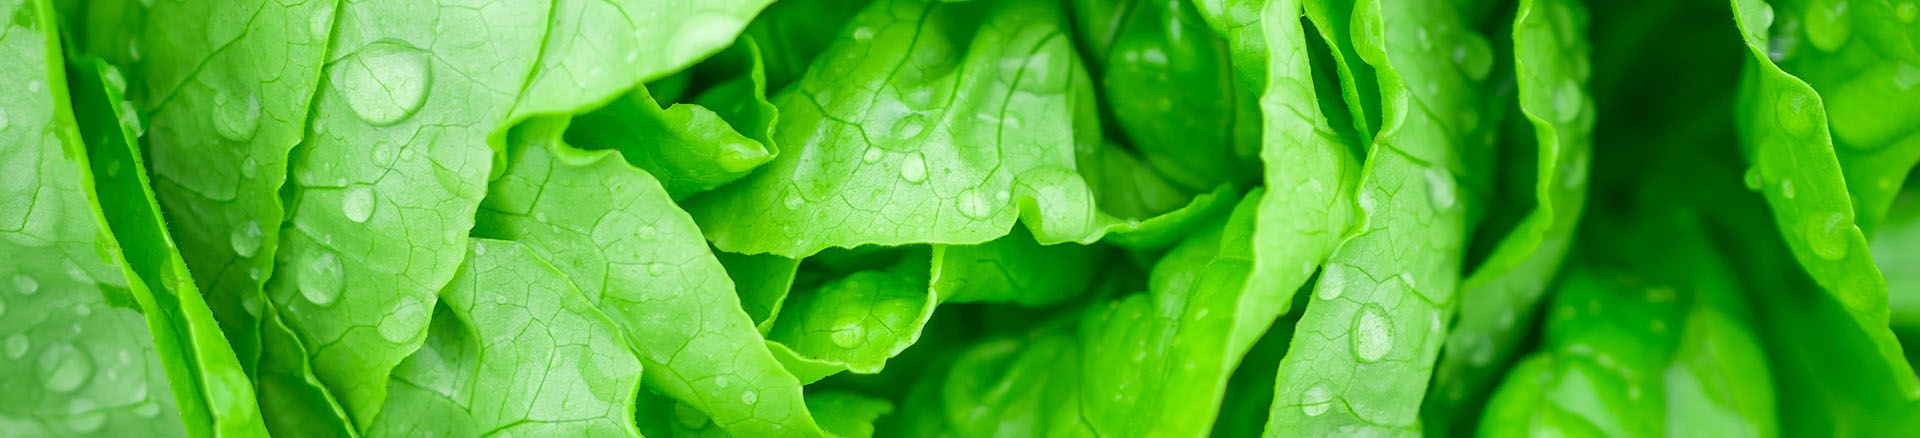 Grocery primary banner of green lettuce.jpg